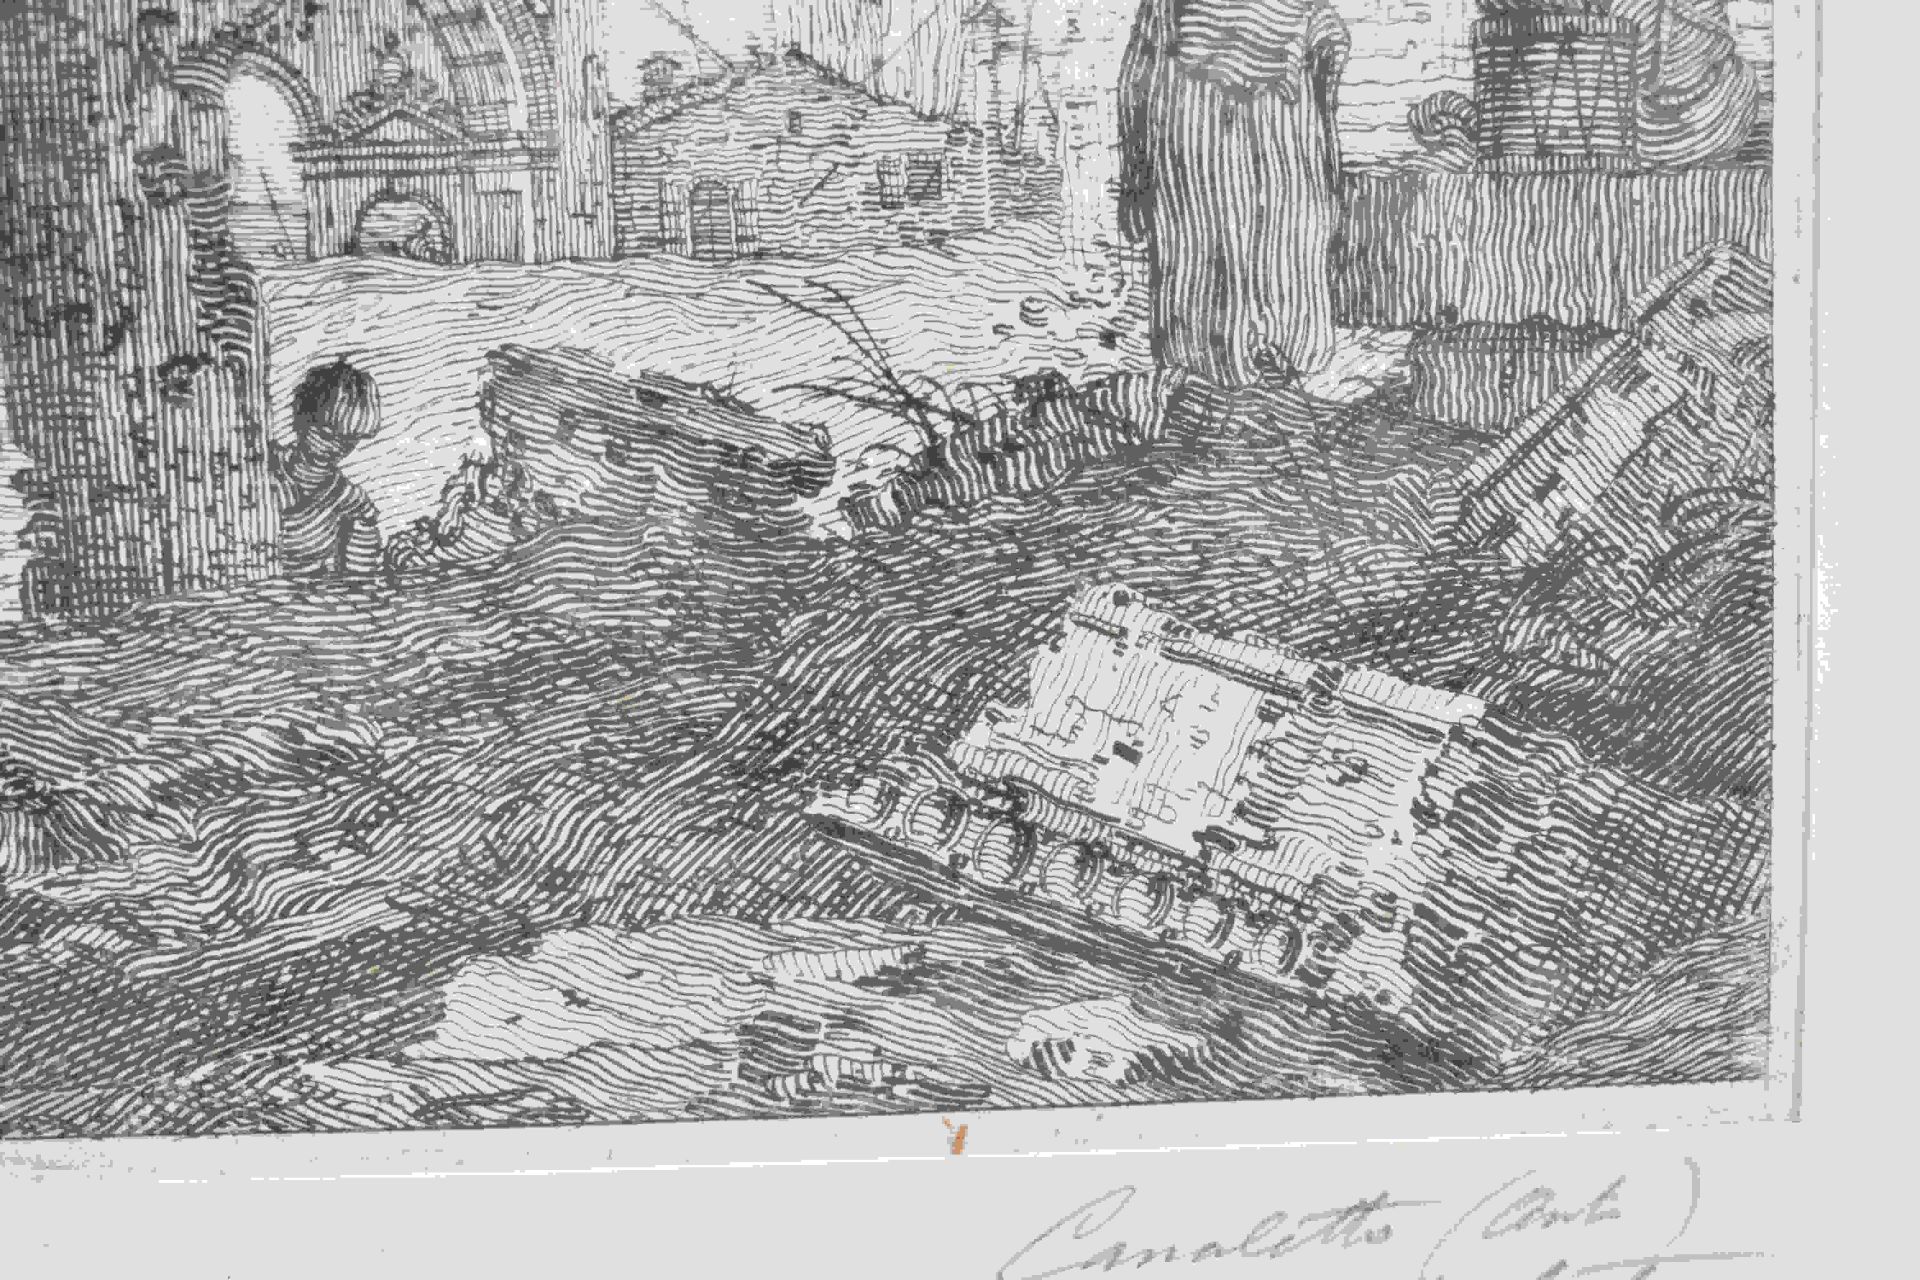 Canal, Giovanni Antonio, gen. Canaletto: Il portico con la lanterna - Image 4 of 24